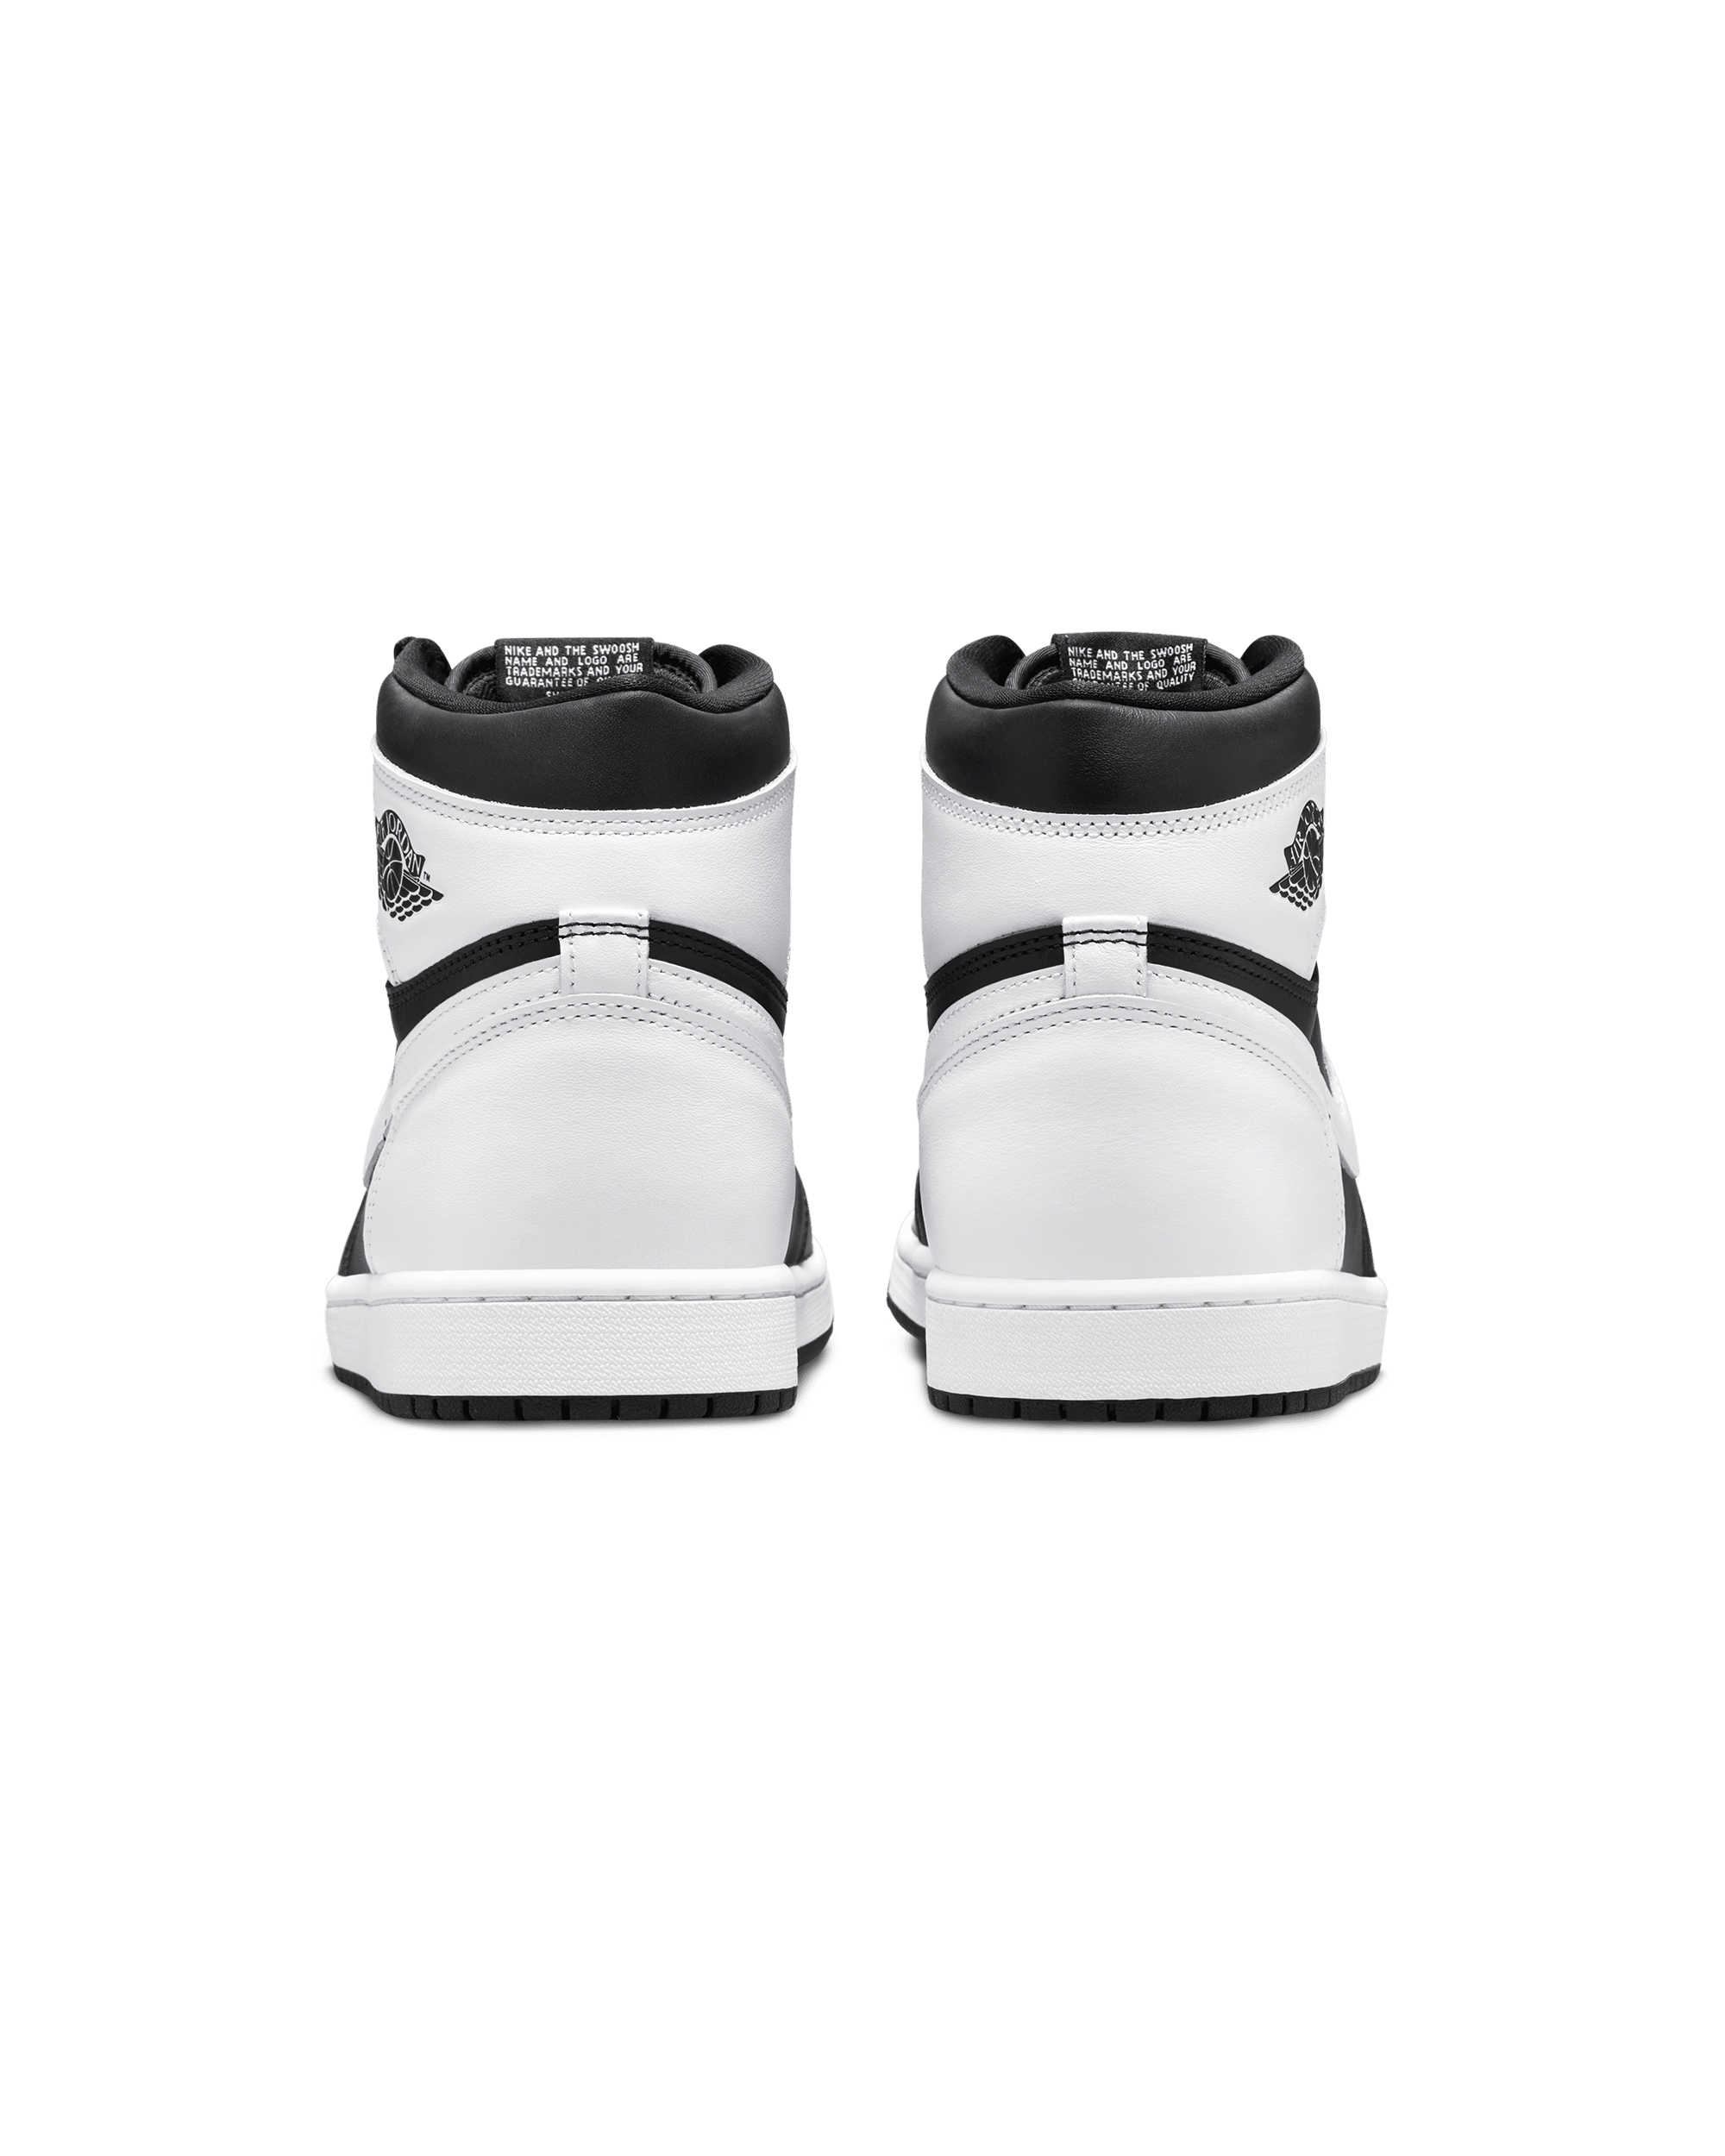 Air Jordan 1 Retro High Og - Black / White